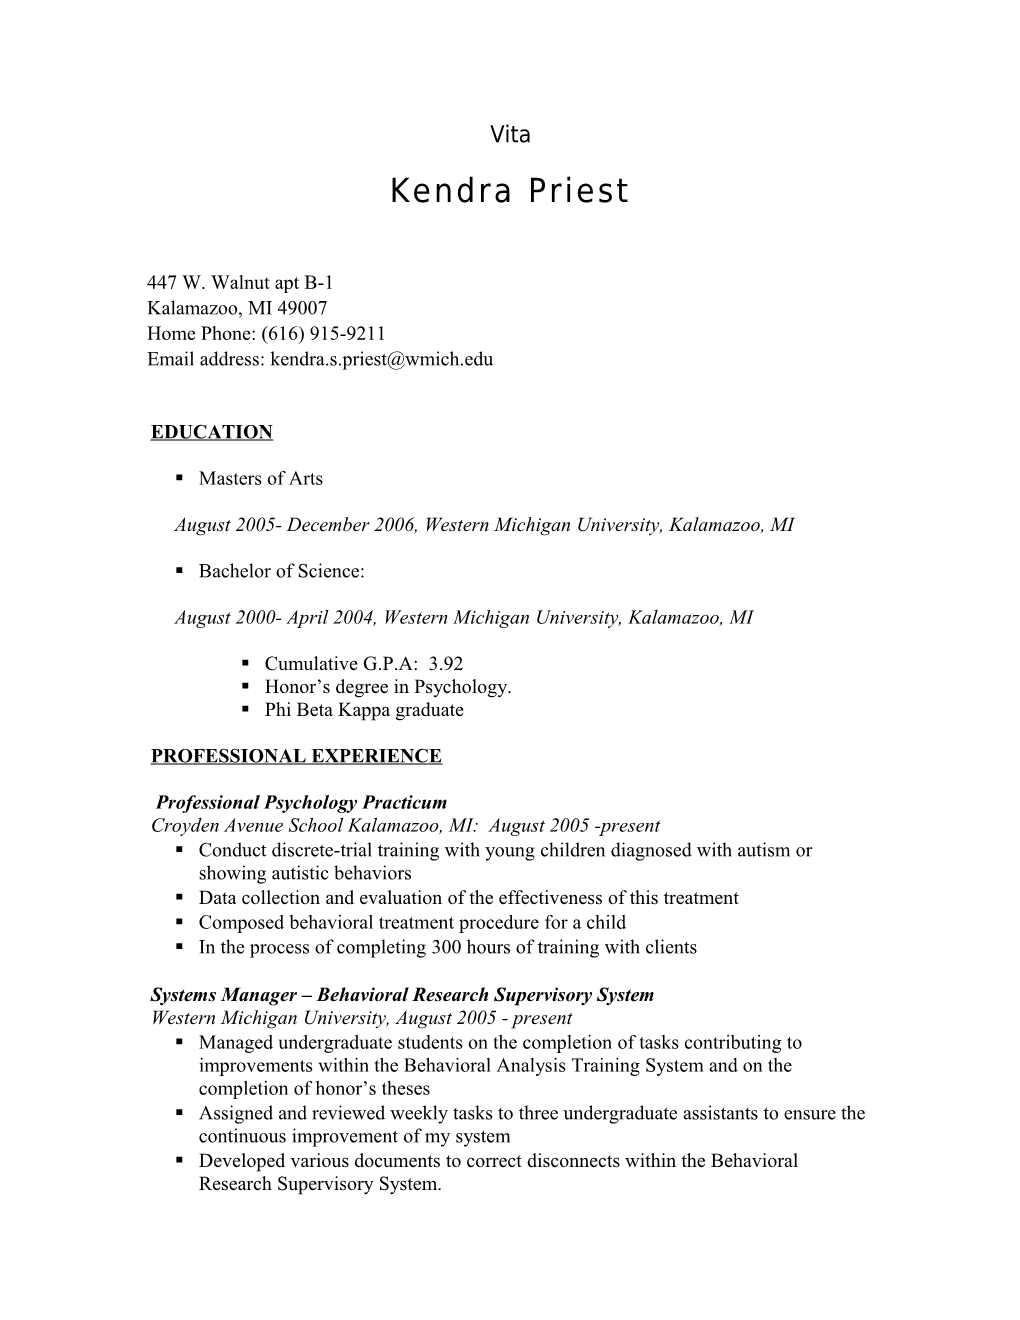 Kendra Priest